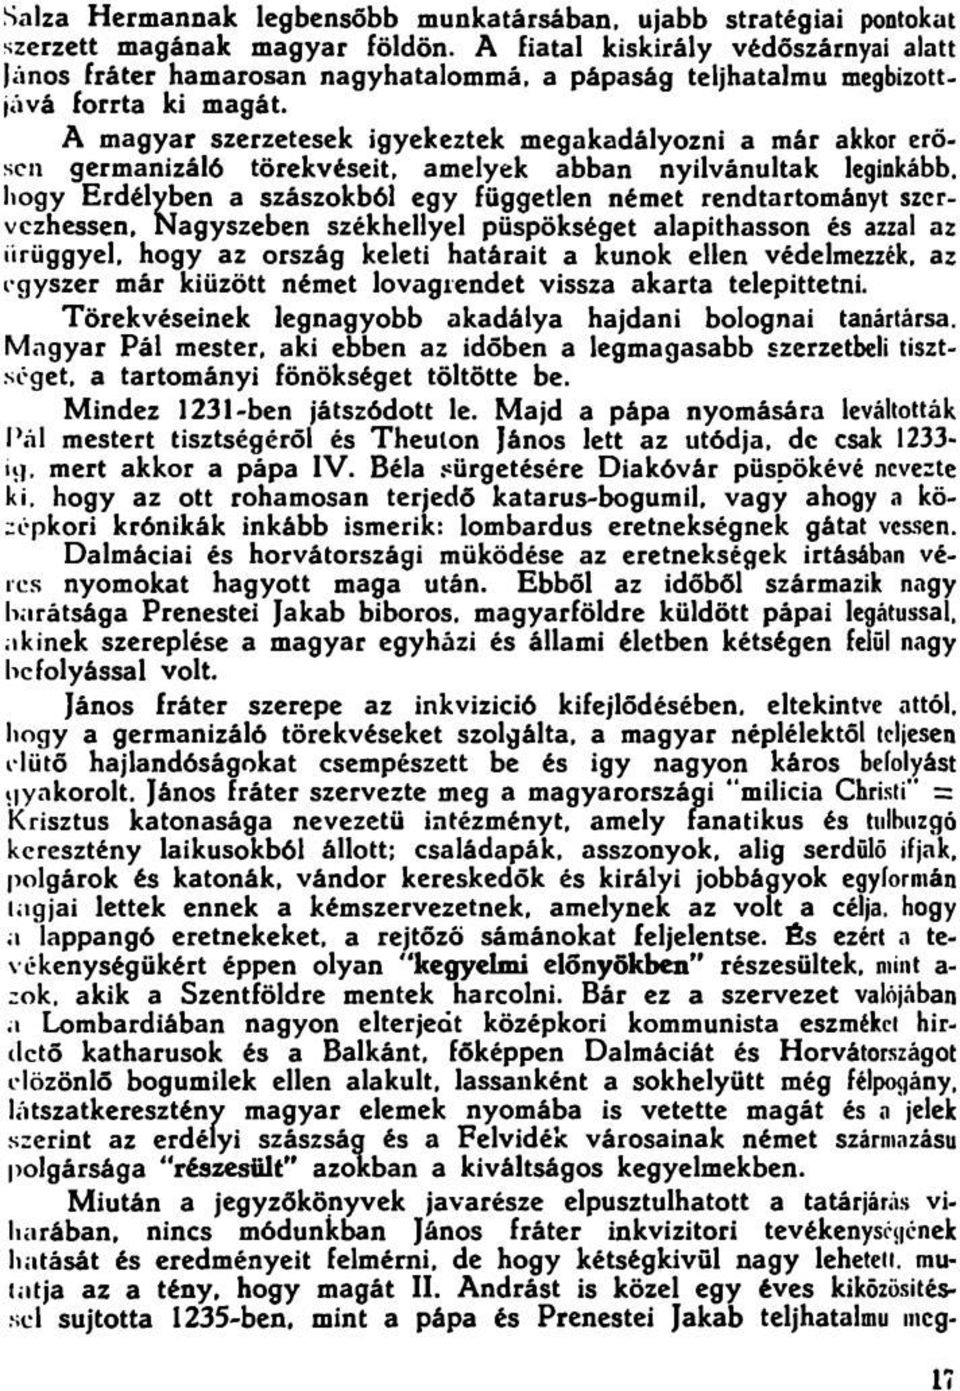 A magyar szerzetesek igyekeztek megakadályozni a már akkor erősen germanizáló törekvéseit, amelyek abban nyilvánultak leginkább, hogy Erdélyben a szászokból egy független német rendtartományt